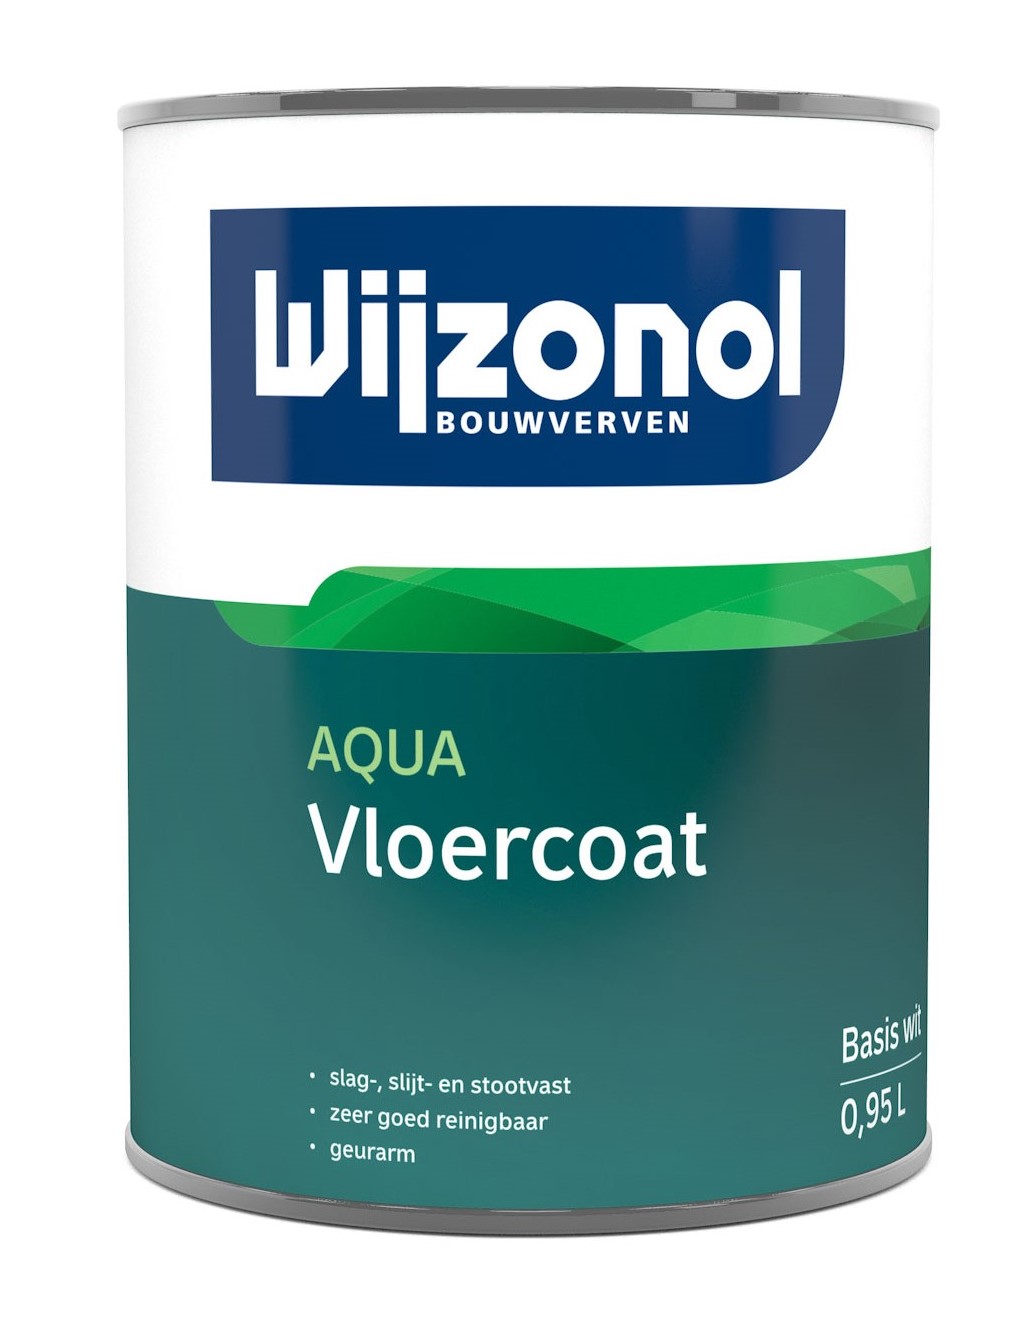 Wijzonol Aqua Vloercoat